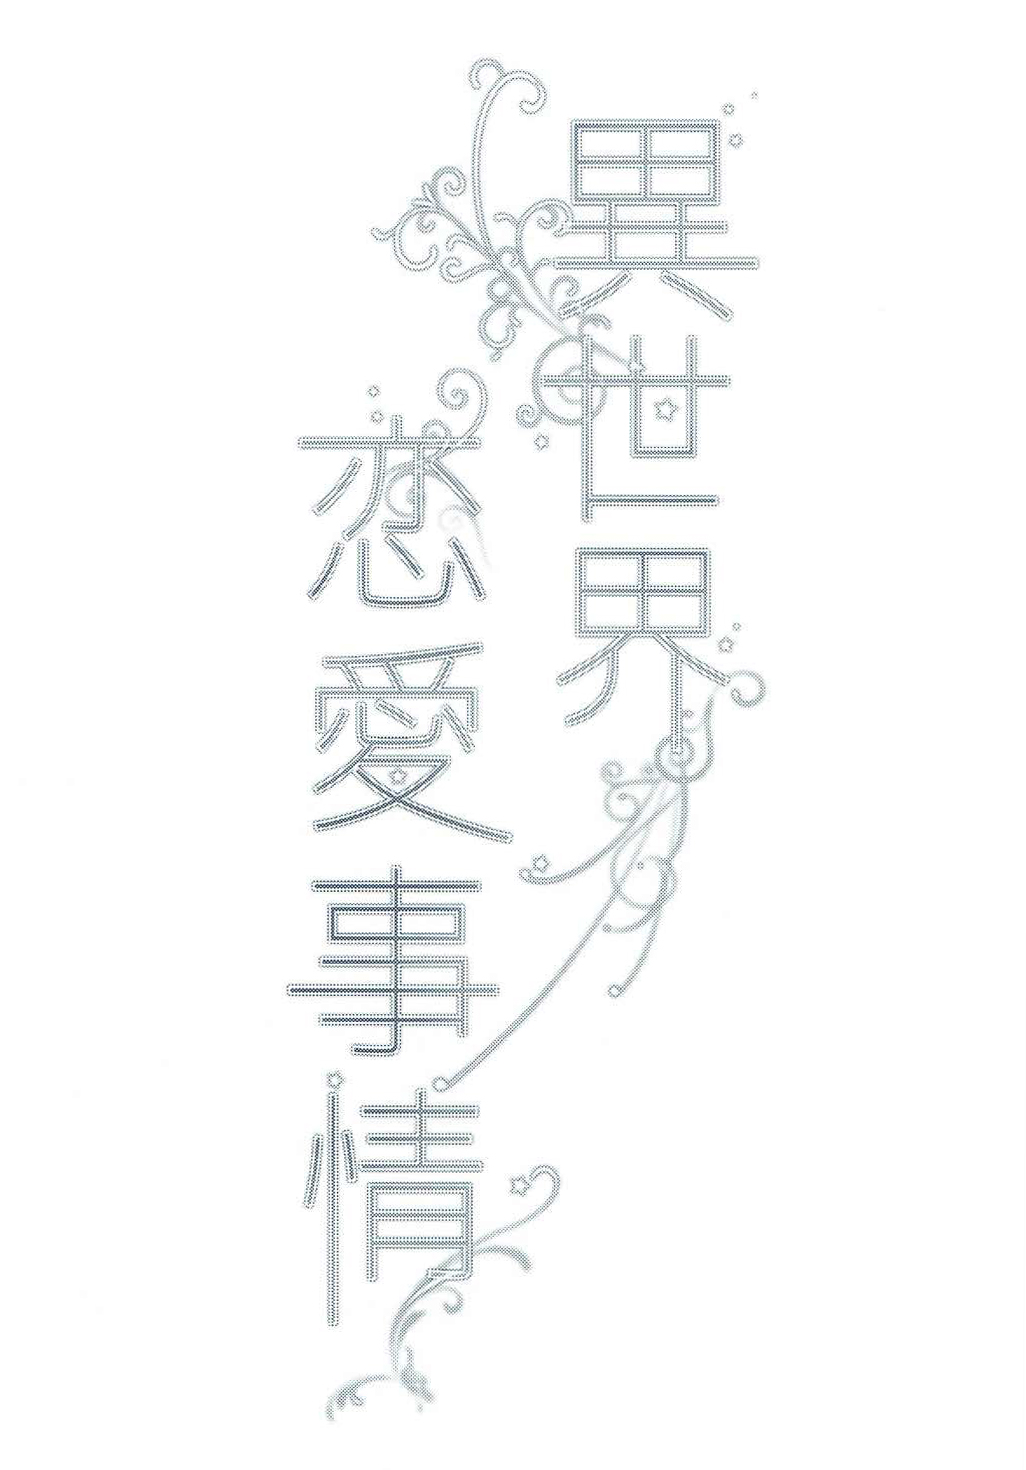 (C91) [matine (iyutani)] Isekai Renai Jijou (Magic Knight Rayearth) [Chinese] [沒有漢化] (C91) [matine (iyutani)] 異世界恋愛事情 (魔法騎士レイアース) [中国翻訳]